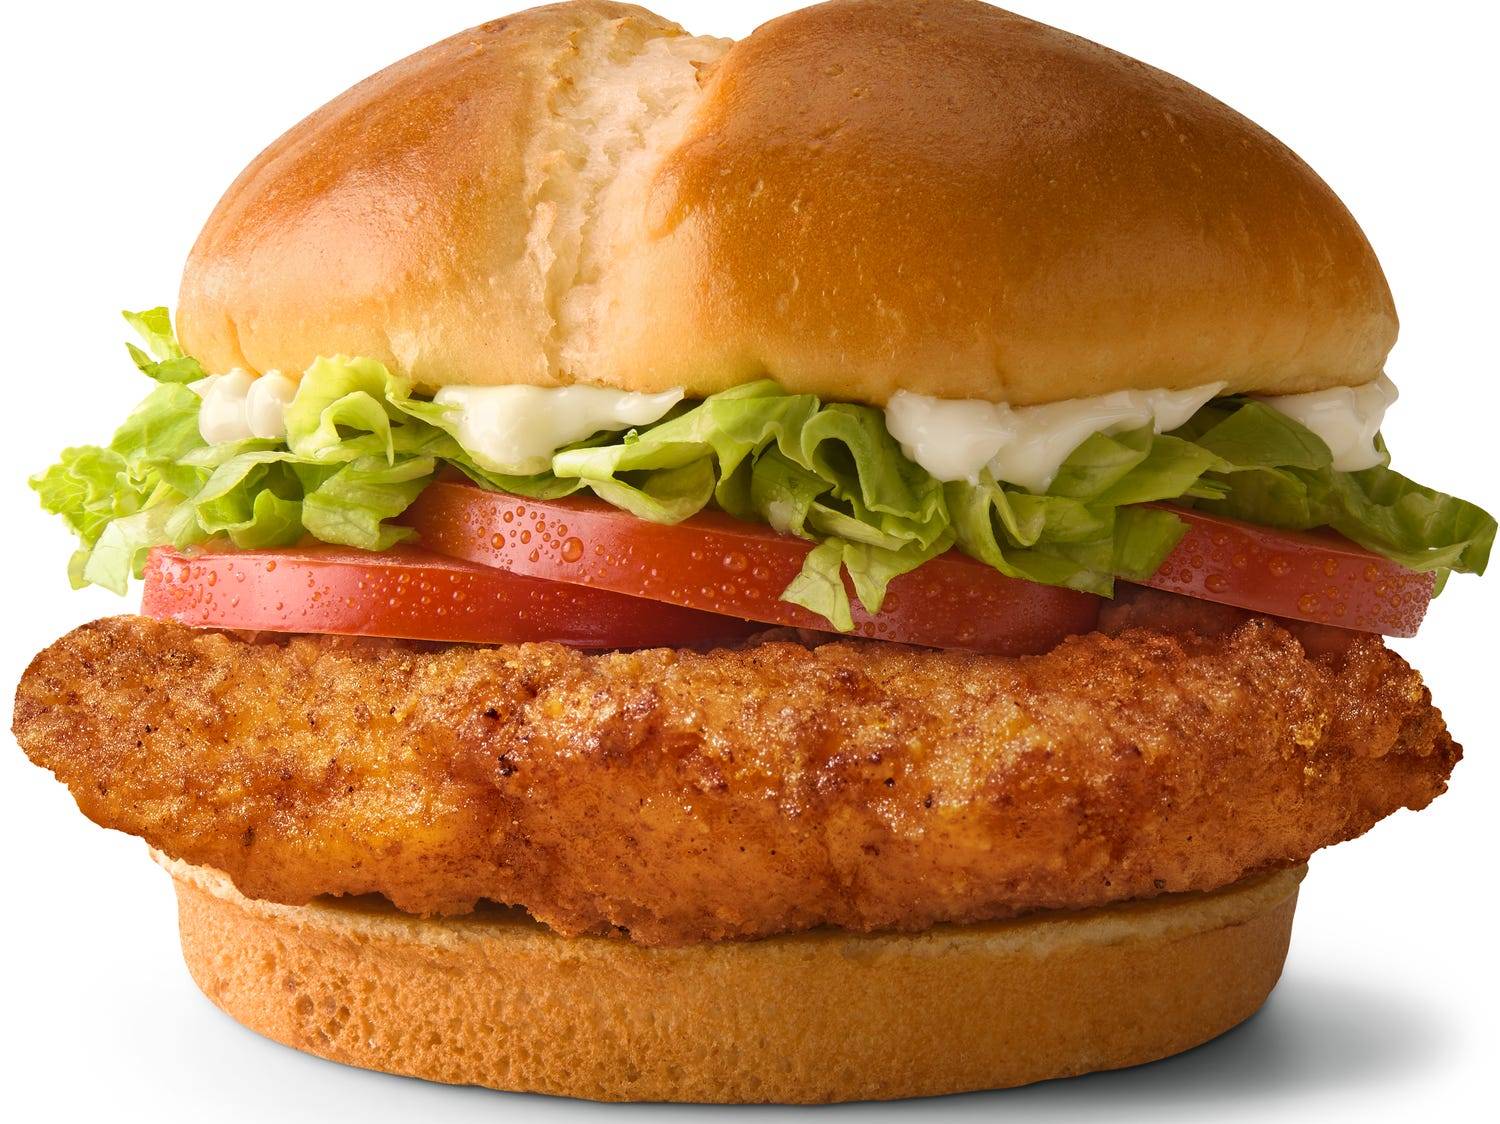 McDonald's is releasing its new chicken sandwich like a hot sneaker